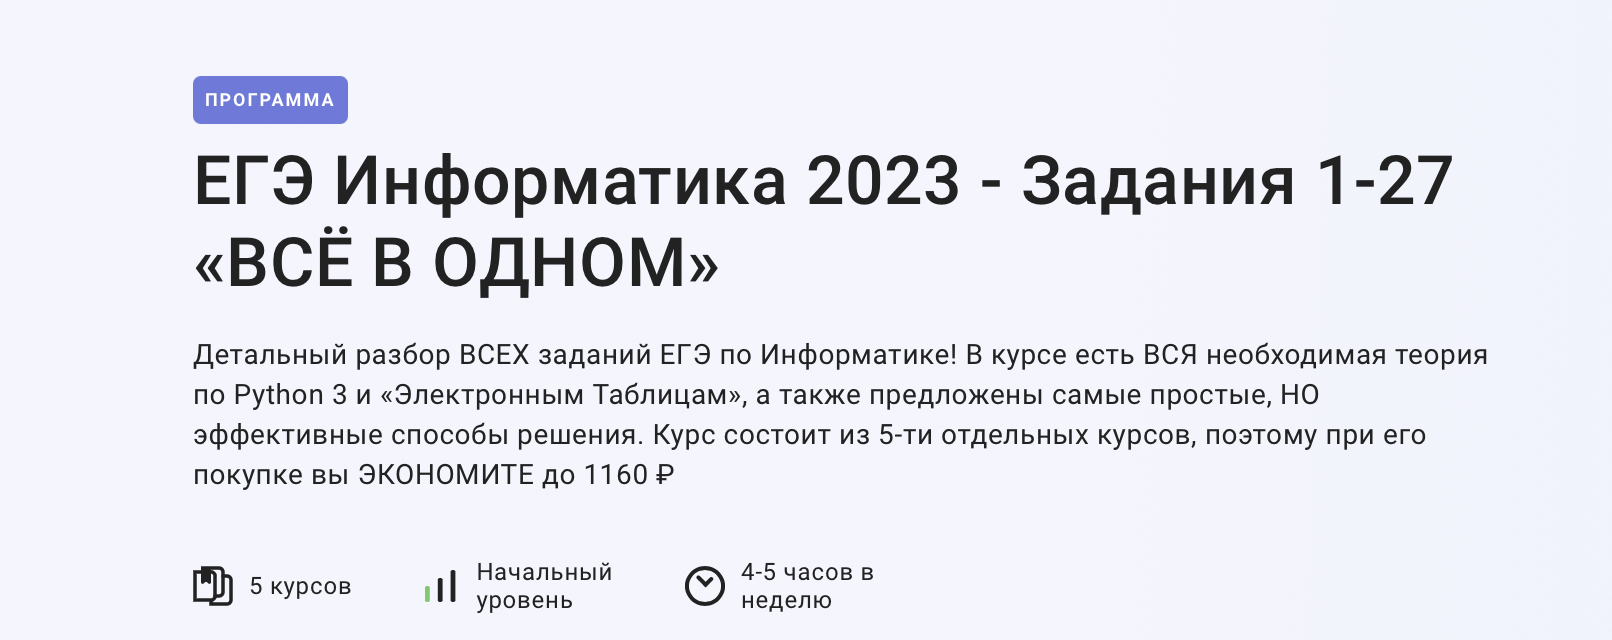 Новый фгос информатика 2023. Задания ЕГЭ по информатике 2023. Изменения в ЕГЭ по информатике 2023. Продолжительность ЕГЭ по информатике 2023. 11 Задание ЕГЭ Информатика 2023.